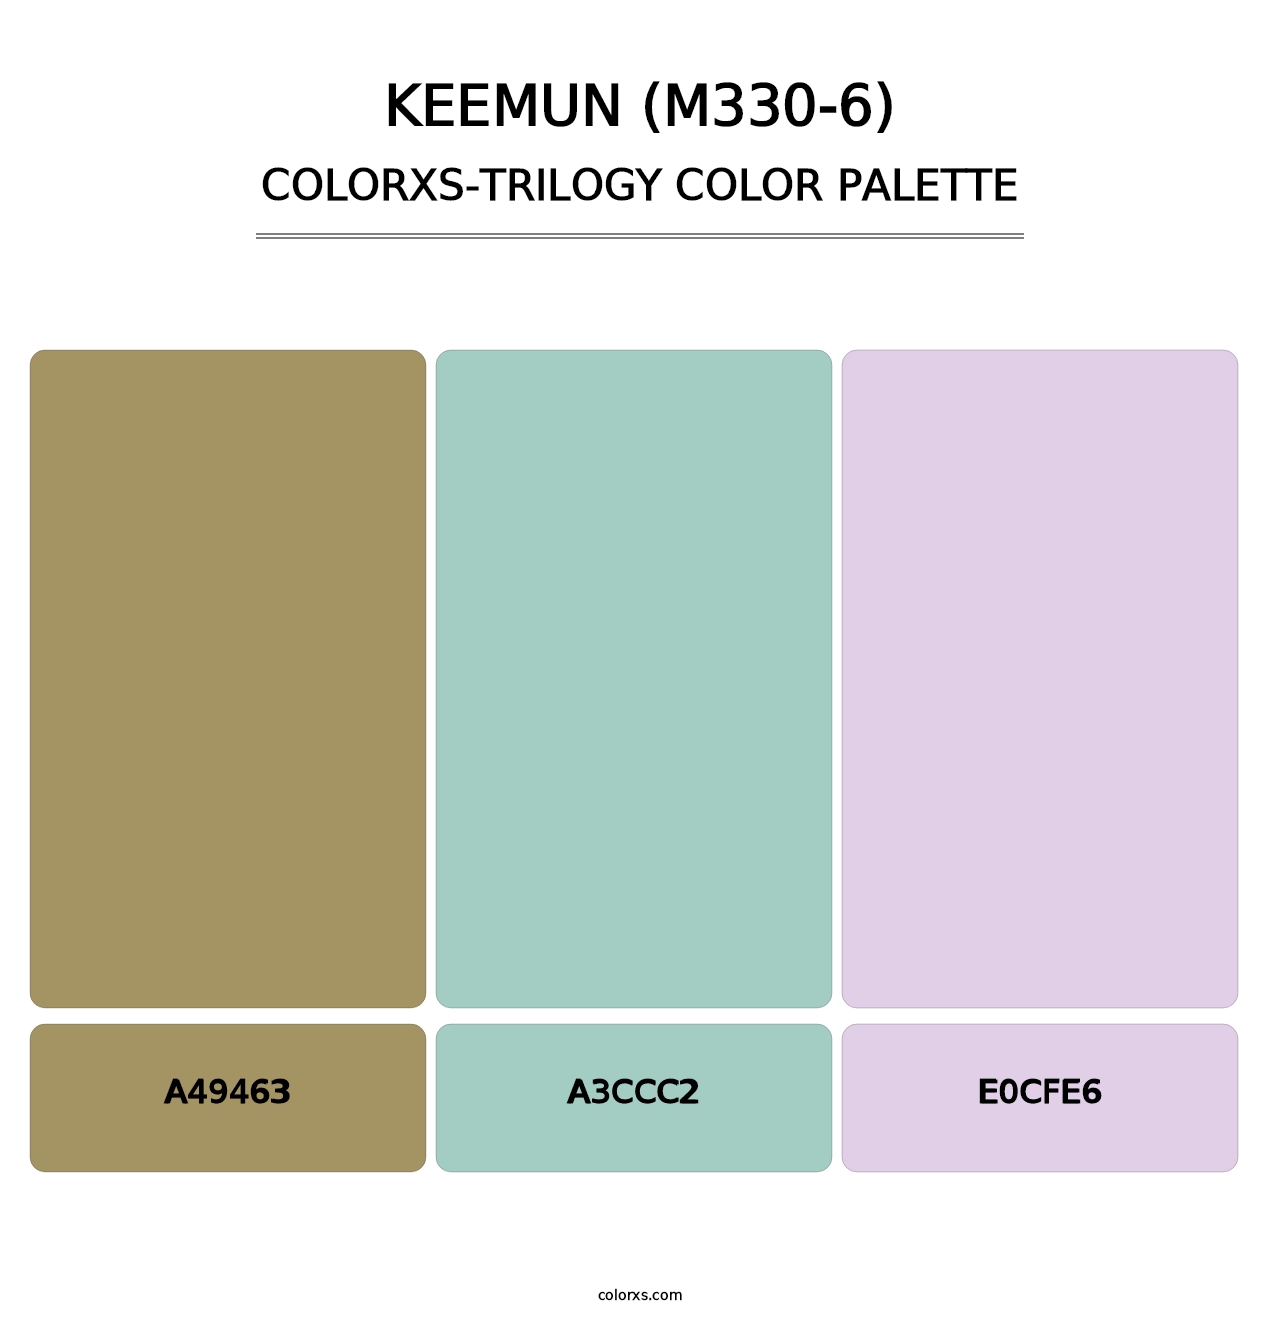 Keemun (M330-6) - Colorxs Trilogy Palette